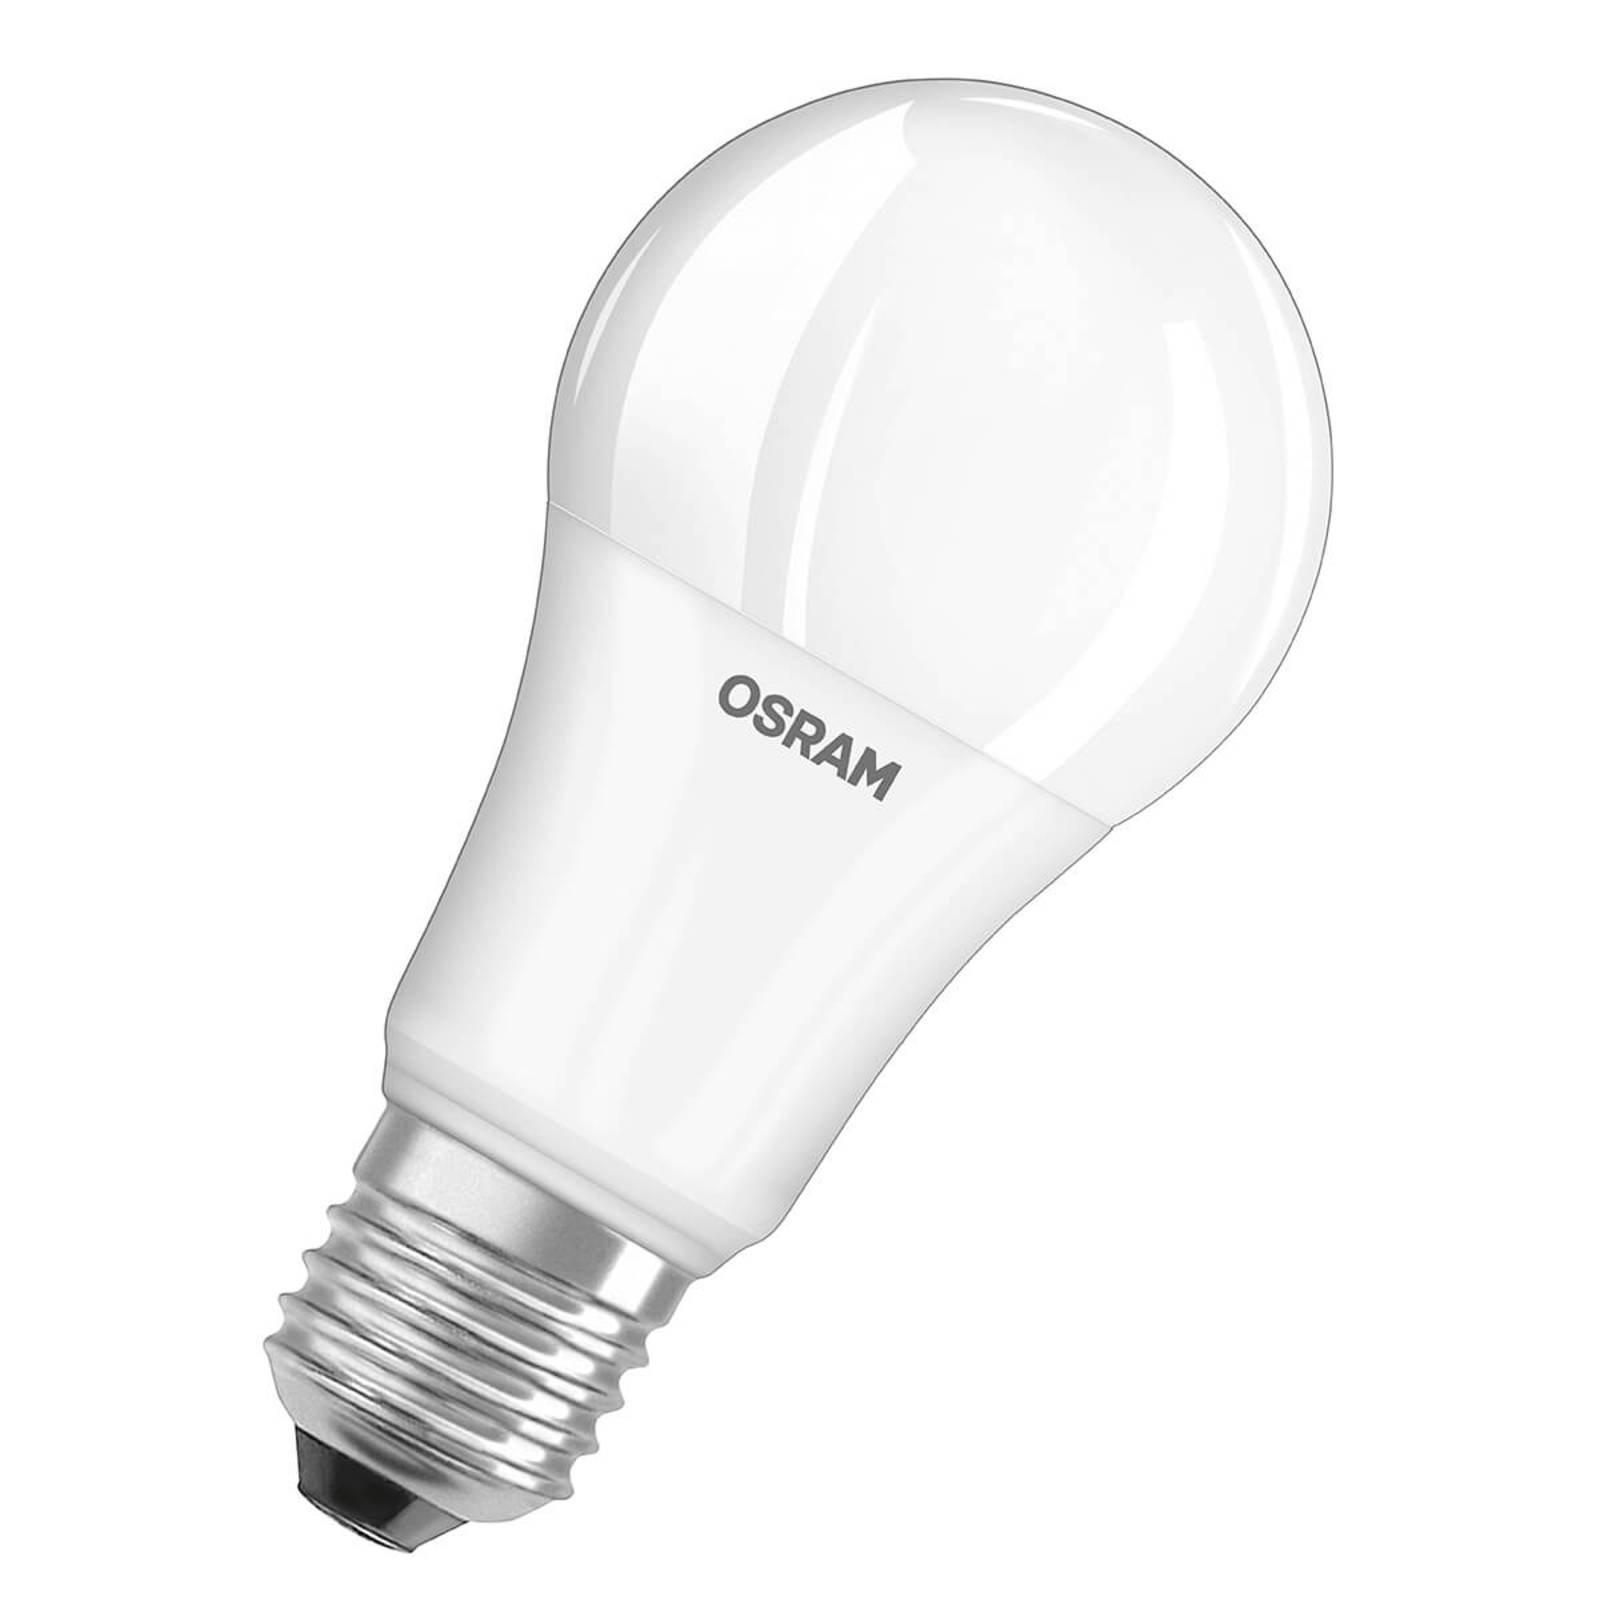 Zdjęcia - Żarówka Osram  LED E27 14W, ciepła biel, zestaw 3 szt. 